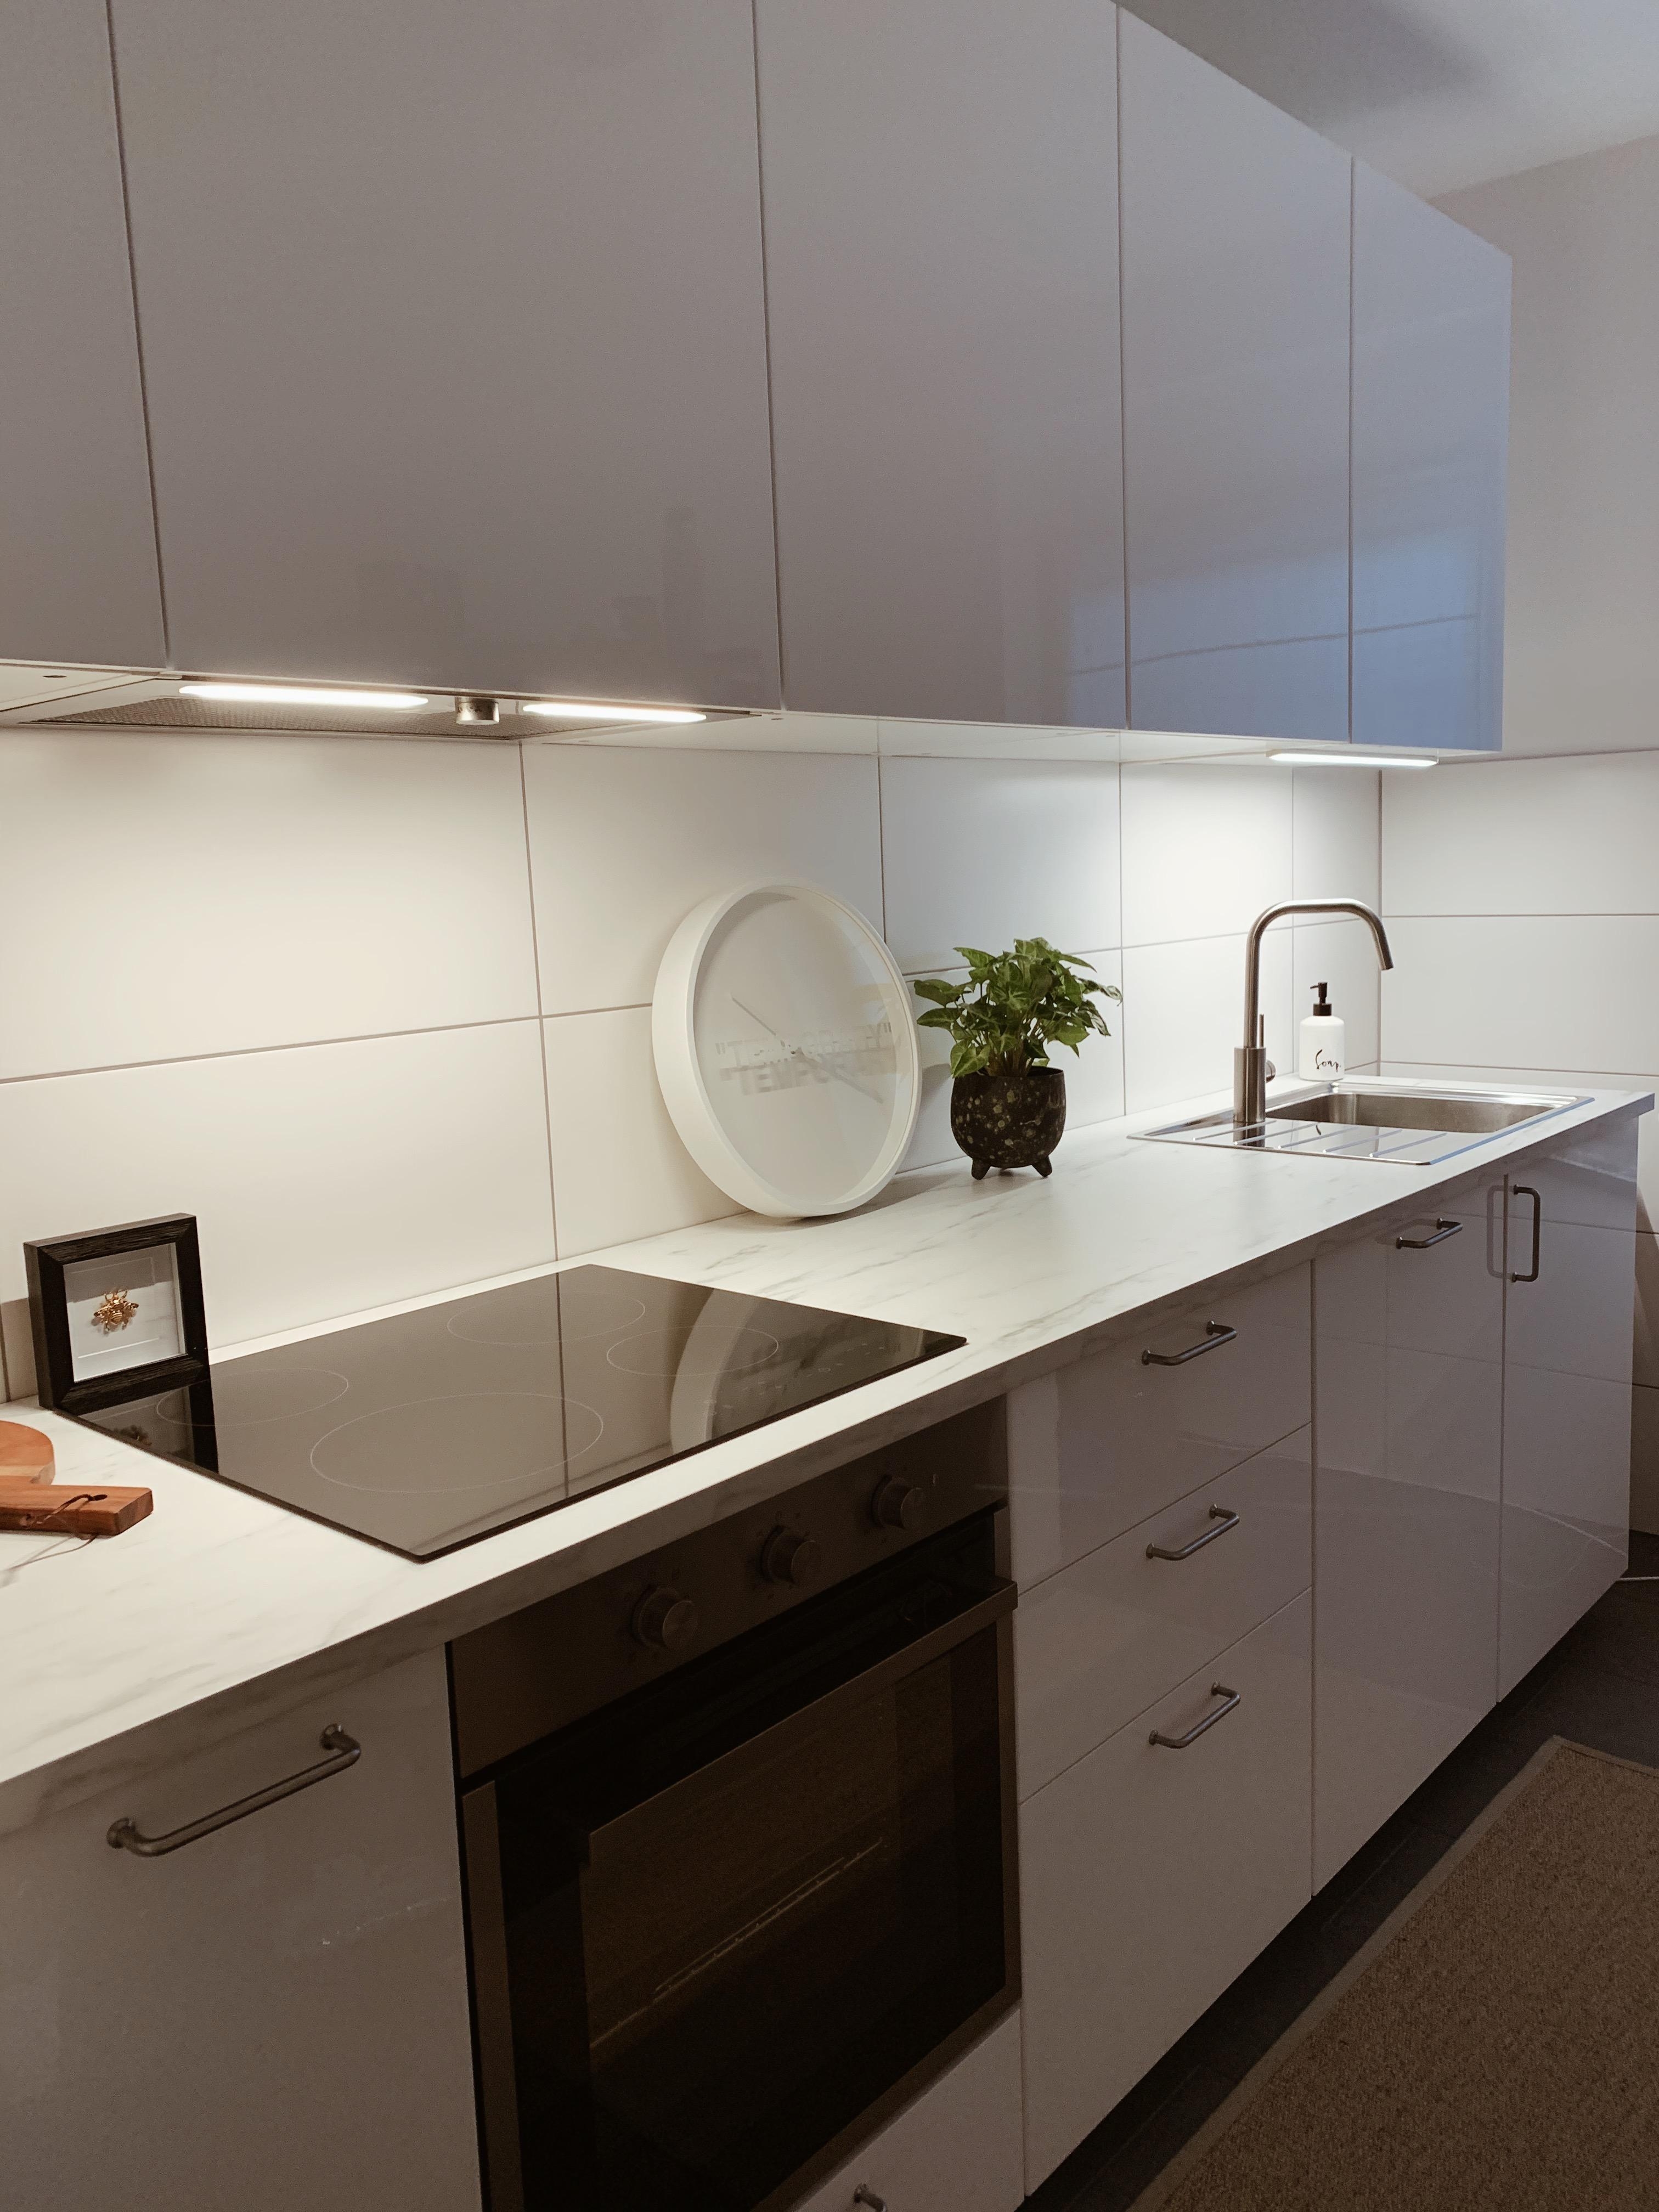 Lieblingskombi 🤍
#white #marble #black #küchenliebe #livingchallenge #kitchen #küche #clean #scandinavian